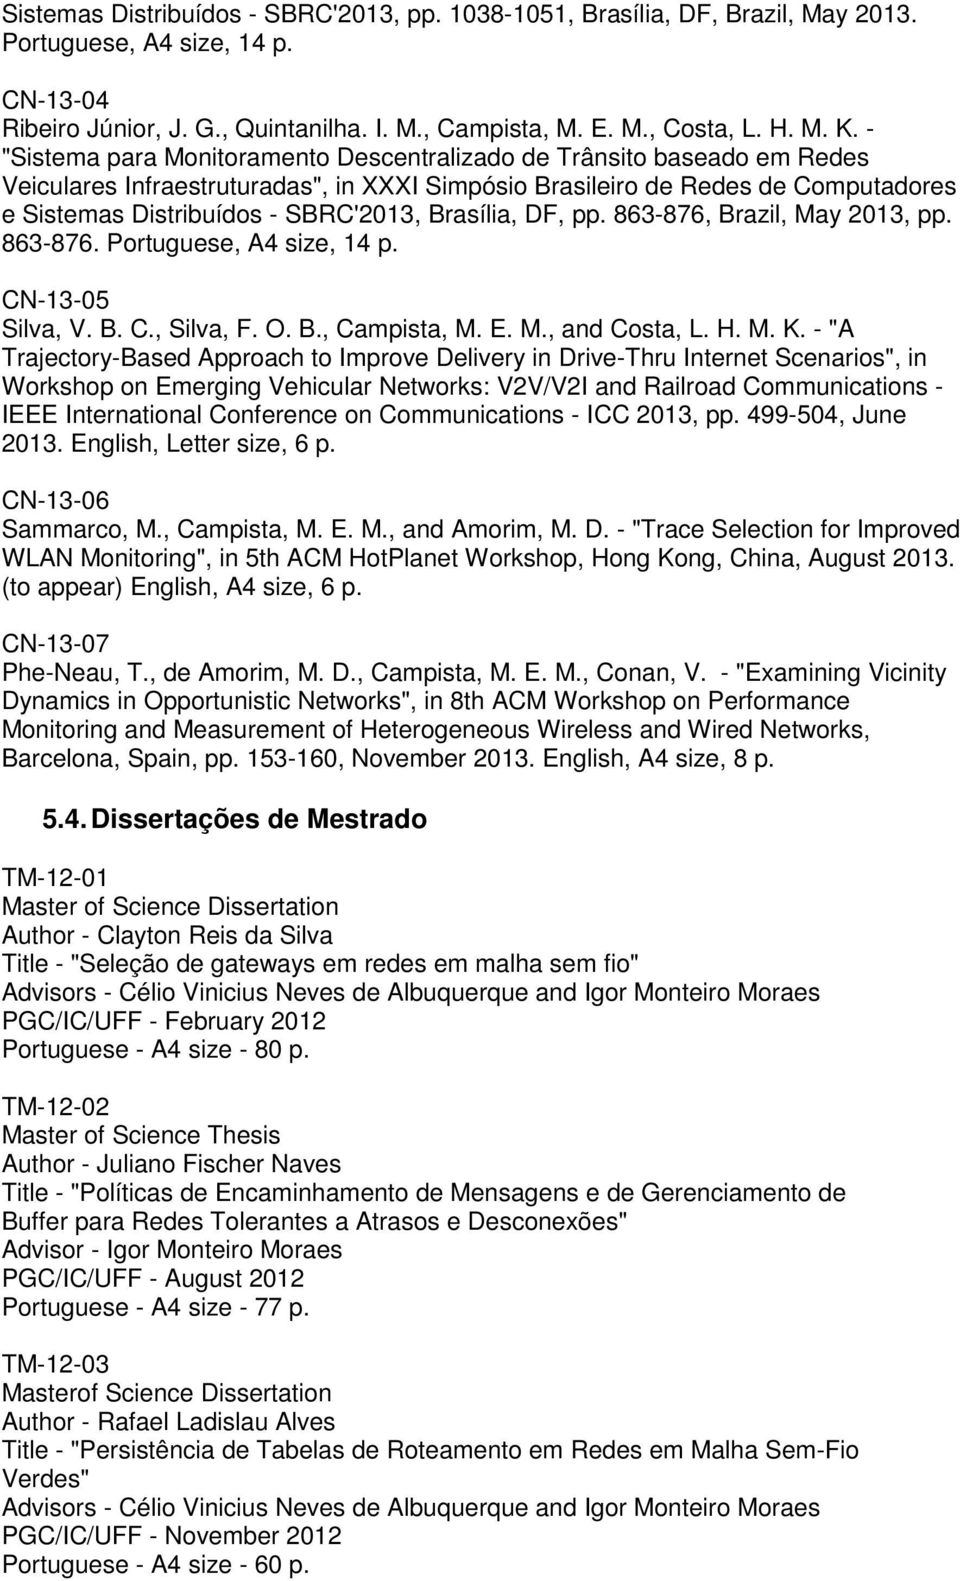 Brasília, DF, pp. 863-876, Brazil, May 2013, pp. 863-876. Portuguese, A4 size, 14 p. CN-13-05 Silva, V. B. C., Silva, F. O. B., Campista, M. E. M., and Costa, L. H. M. K.